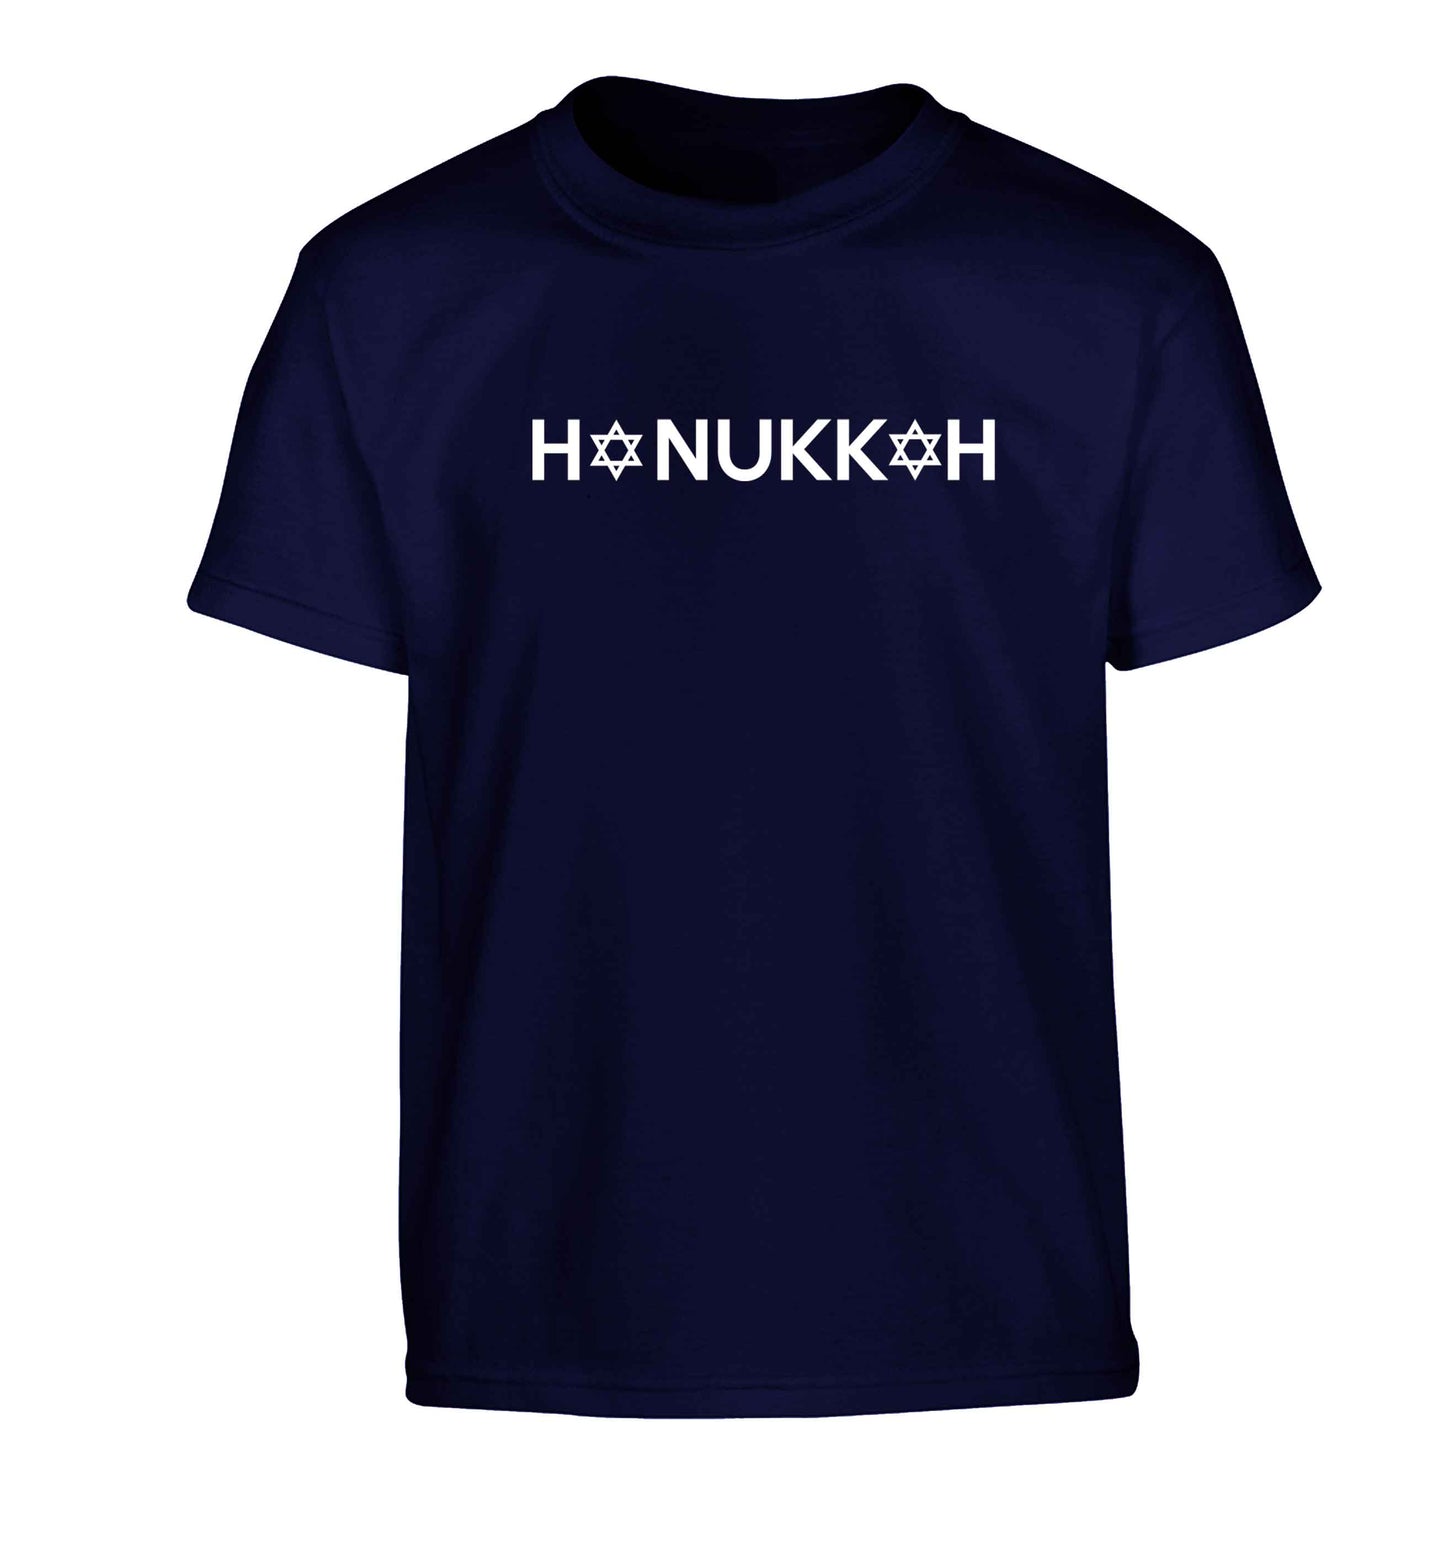 Hanukkah star of david Children's navy Tshirt 12-13 Years